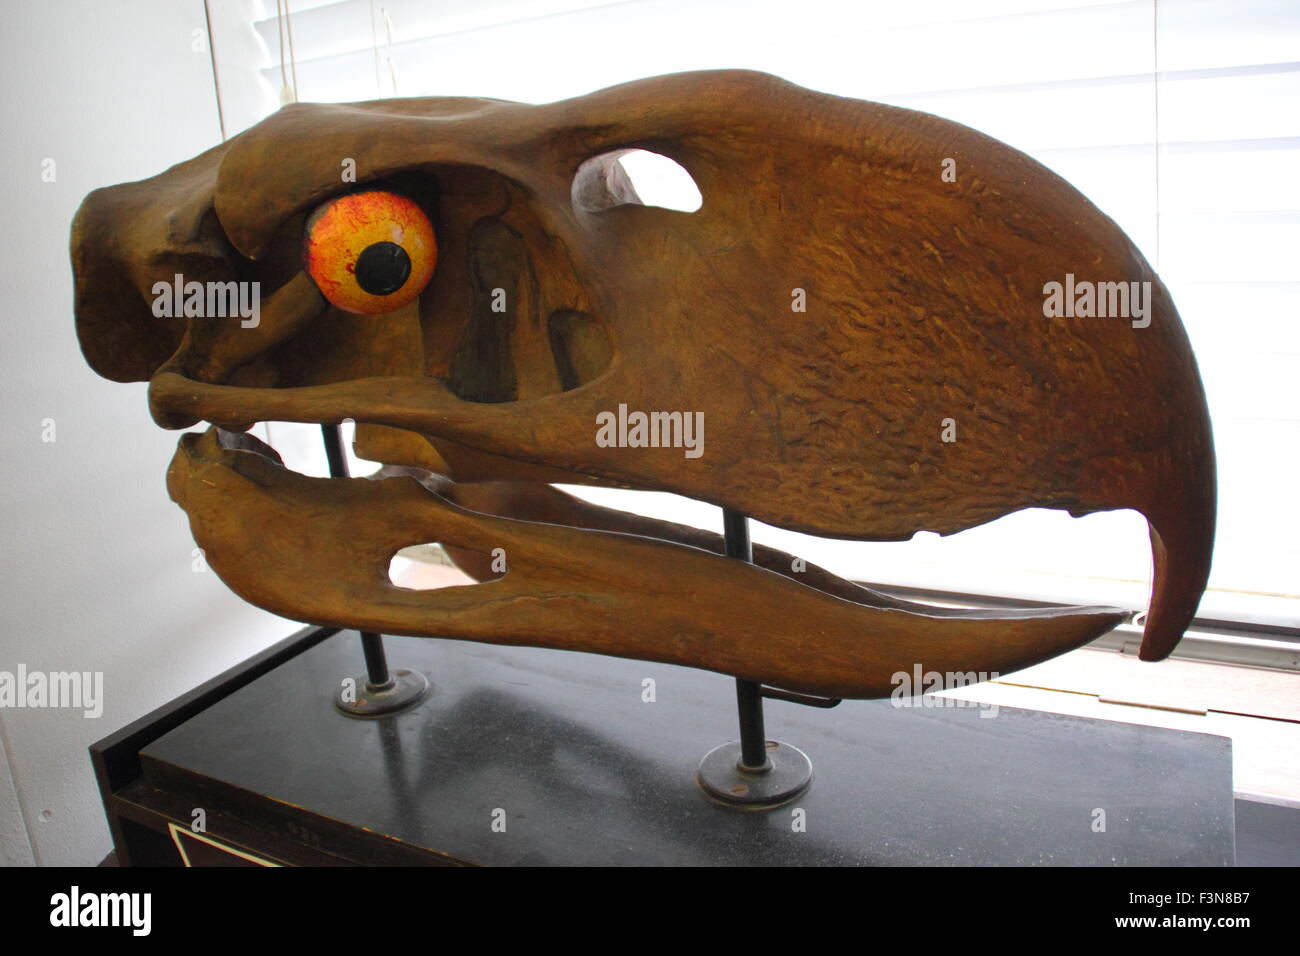 Un modèle de l'giganticskull d'une terreur 'Bird' affichée à l'intérieur de l'Alfred Denny Museum, Université de Sheffield, England, UK Banque D'Images